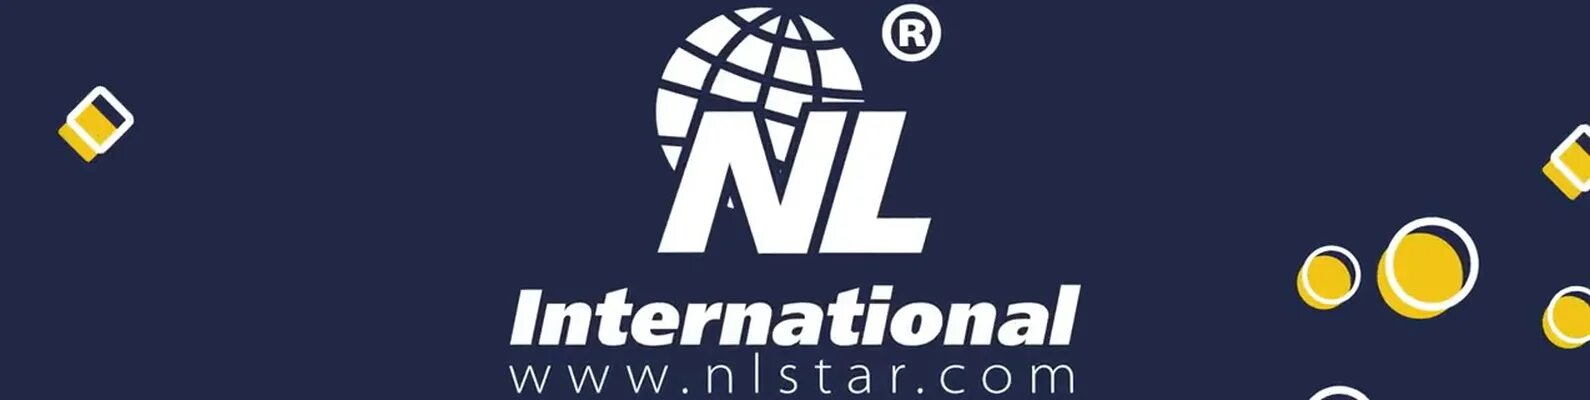 Интернешнл логотип. Nl International. Логотип НЛ. Nl International картинки. Нл интернешнл вход